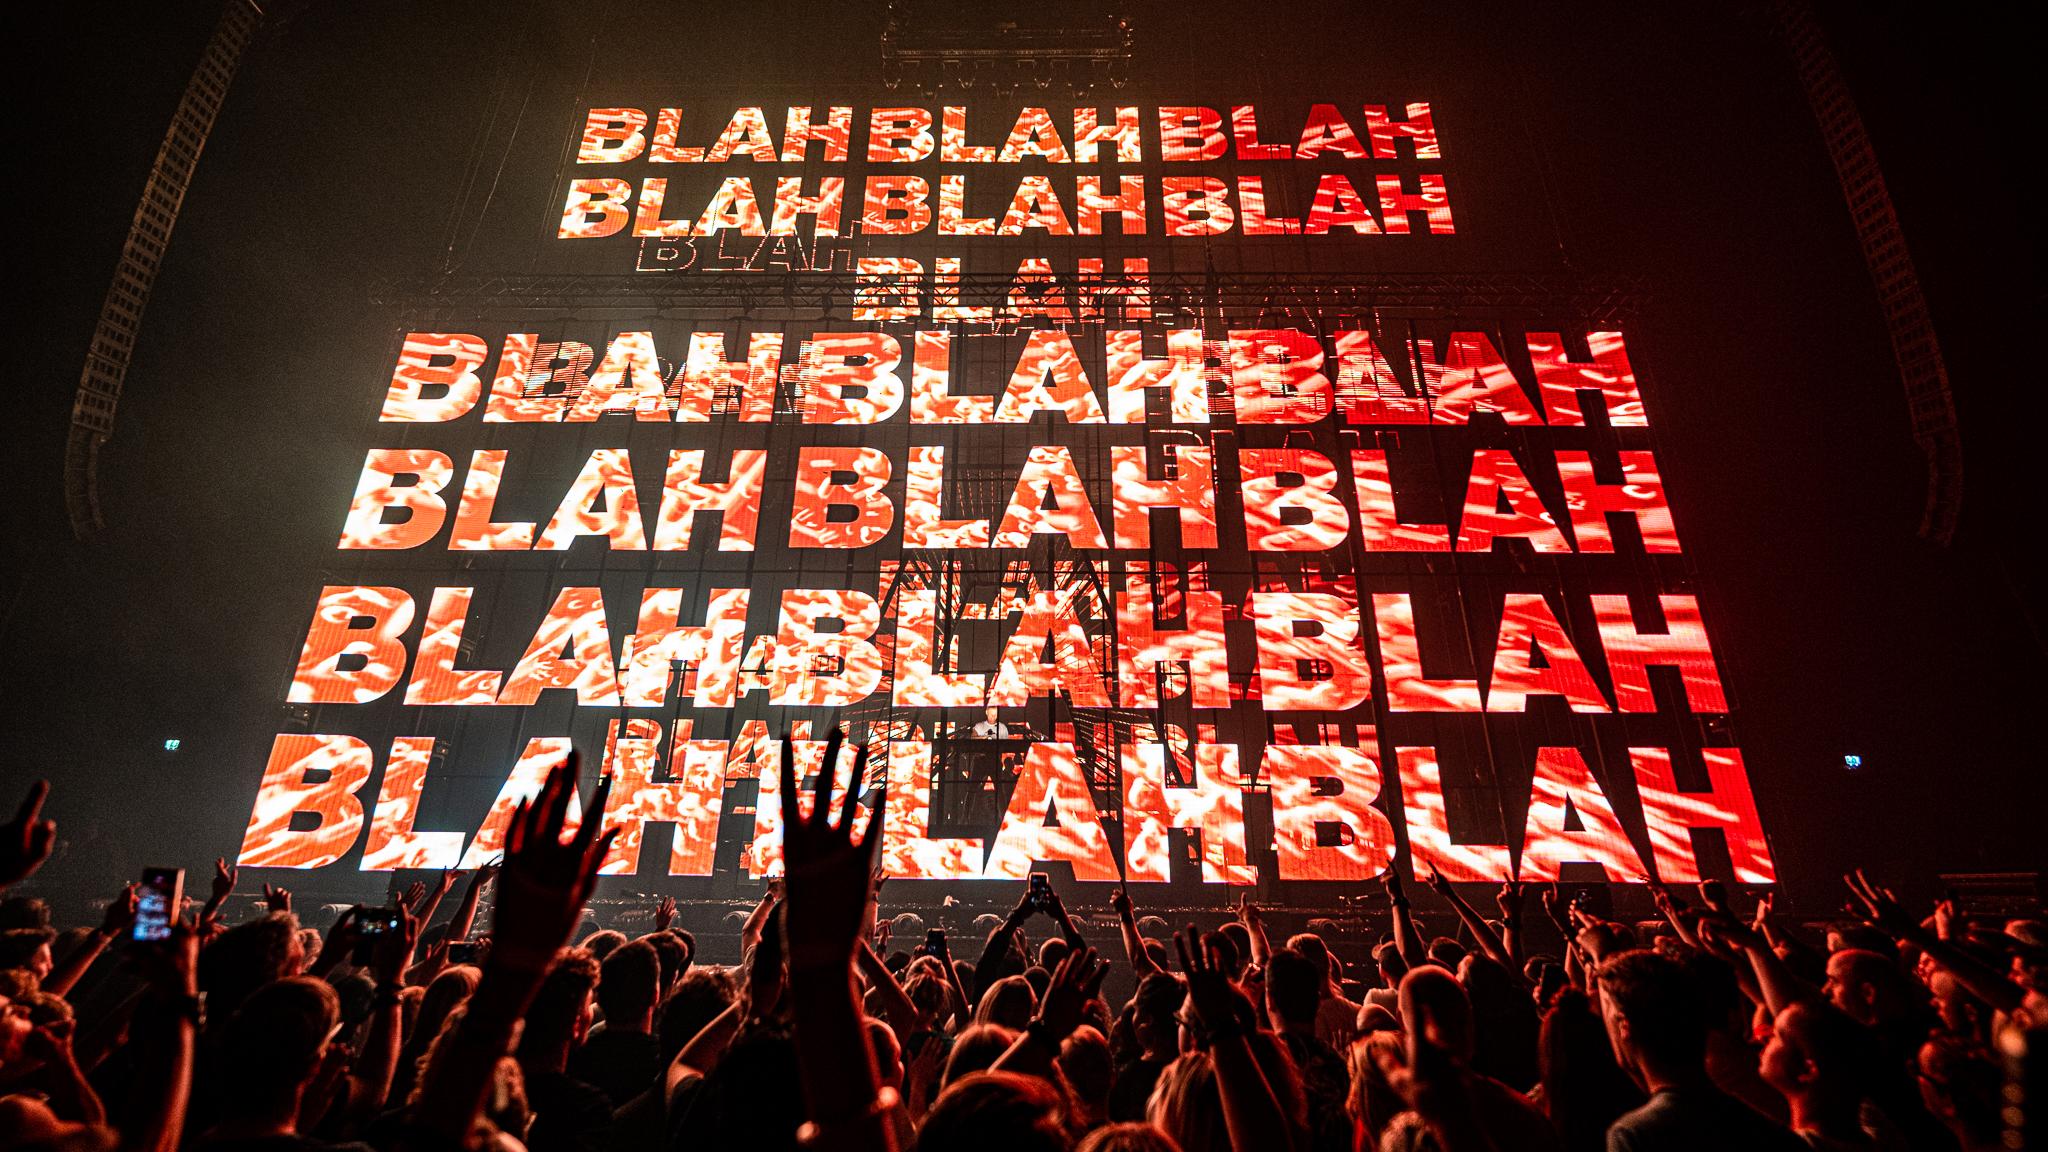 Armin van Buuren fans dancing in front of a screen full of Blah Blah Blah lyrics 